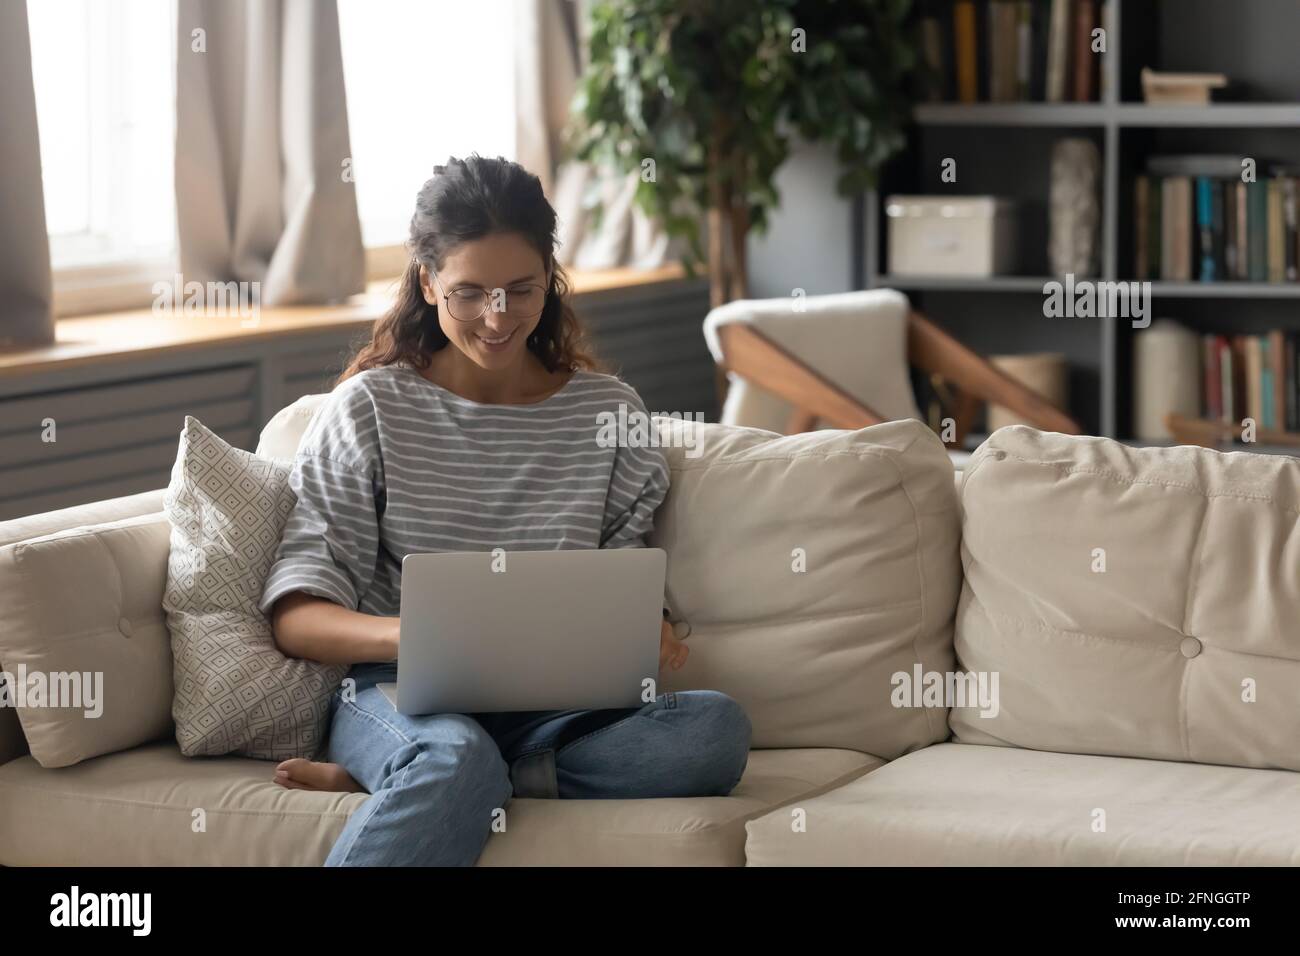 Une jeune femme heureuse travaille sur un ordinateur portable en ligne Banque D'Images